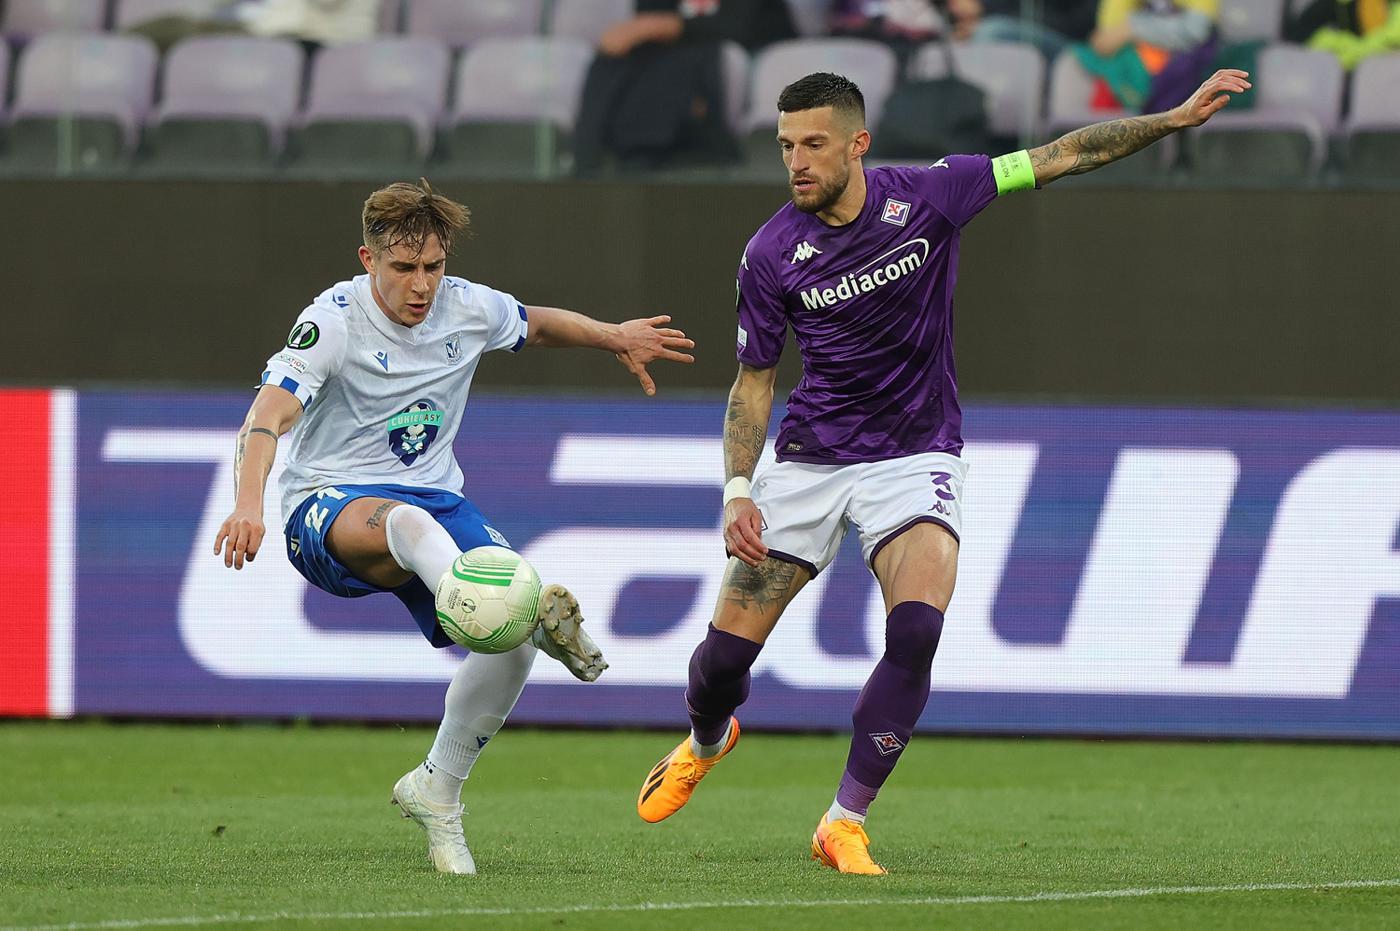 Fiorentina v Lech - 2:3. Conference League. Match review, statistics.